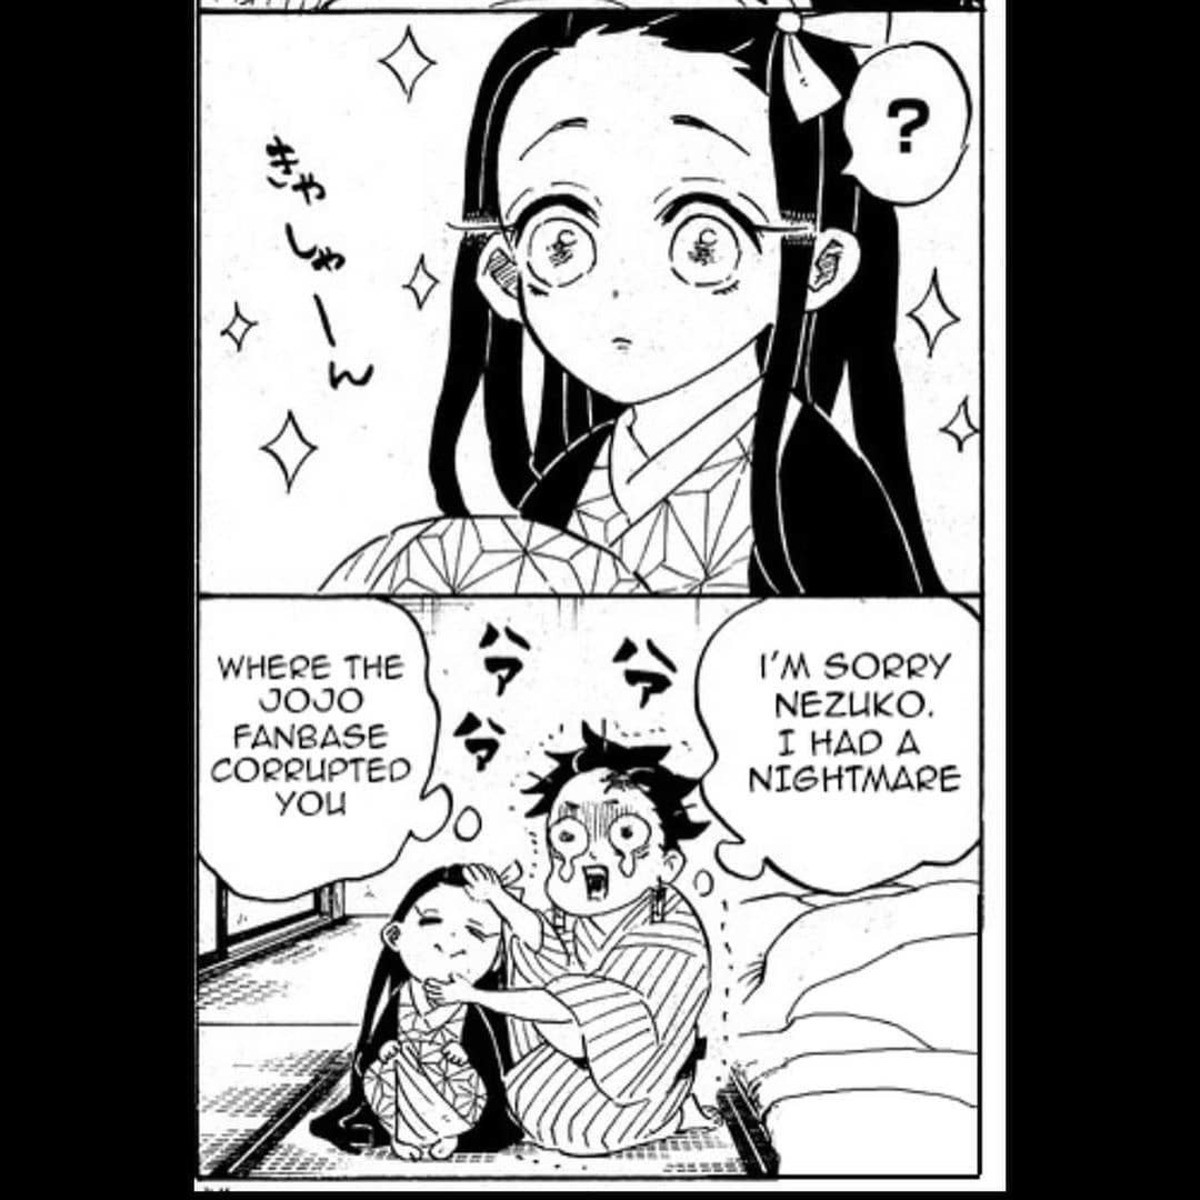 Nezuko manga panels